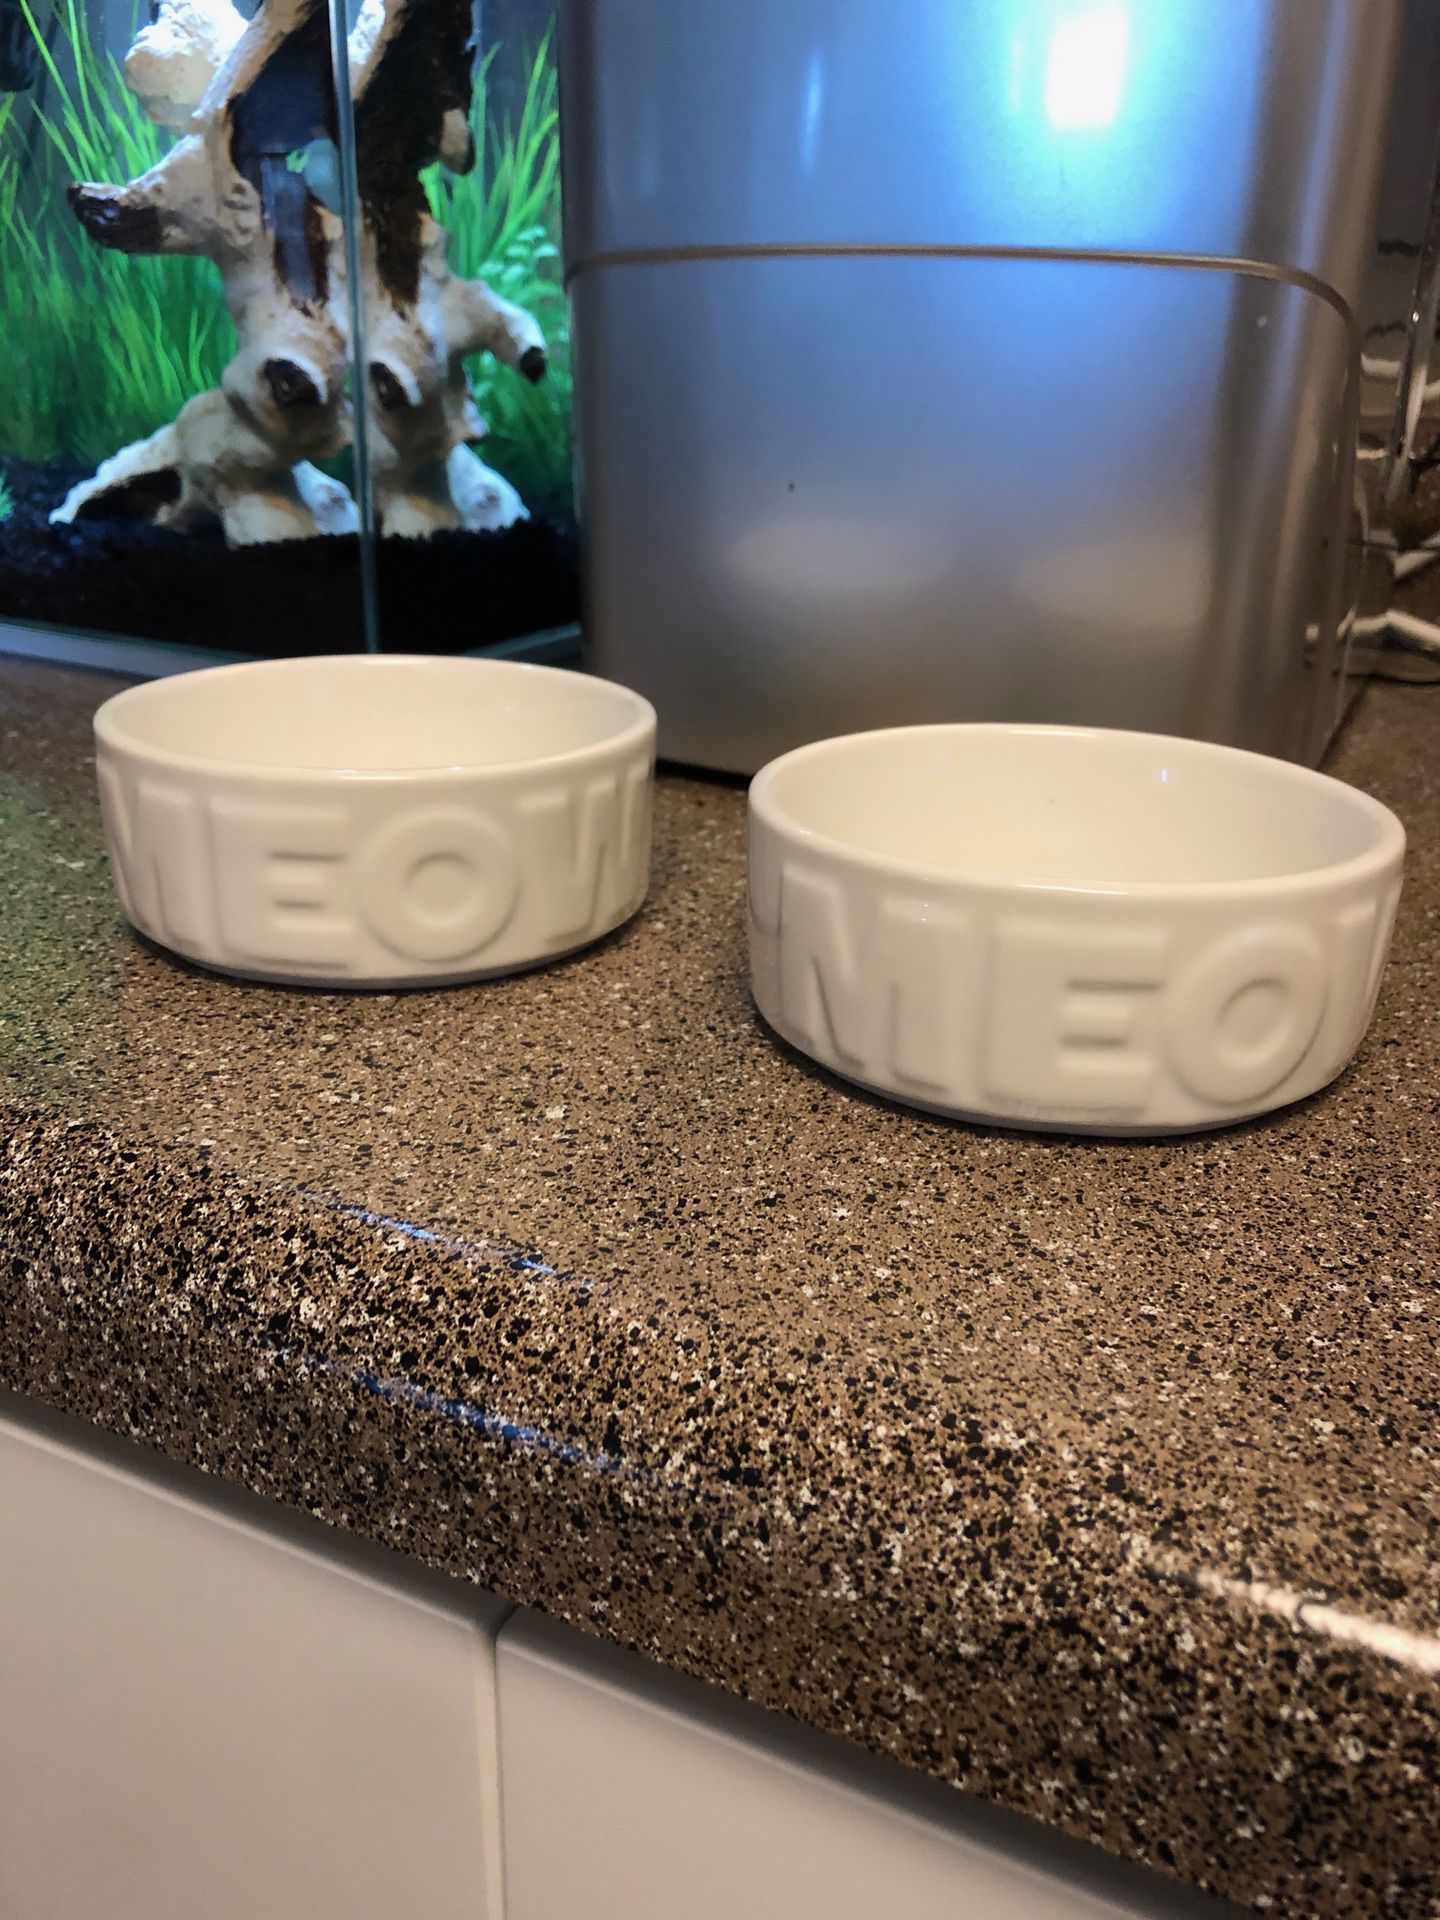 Cat bowls